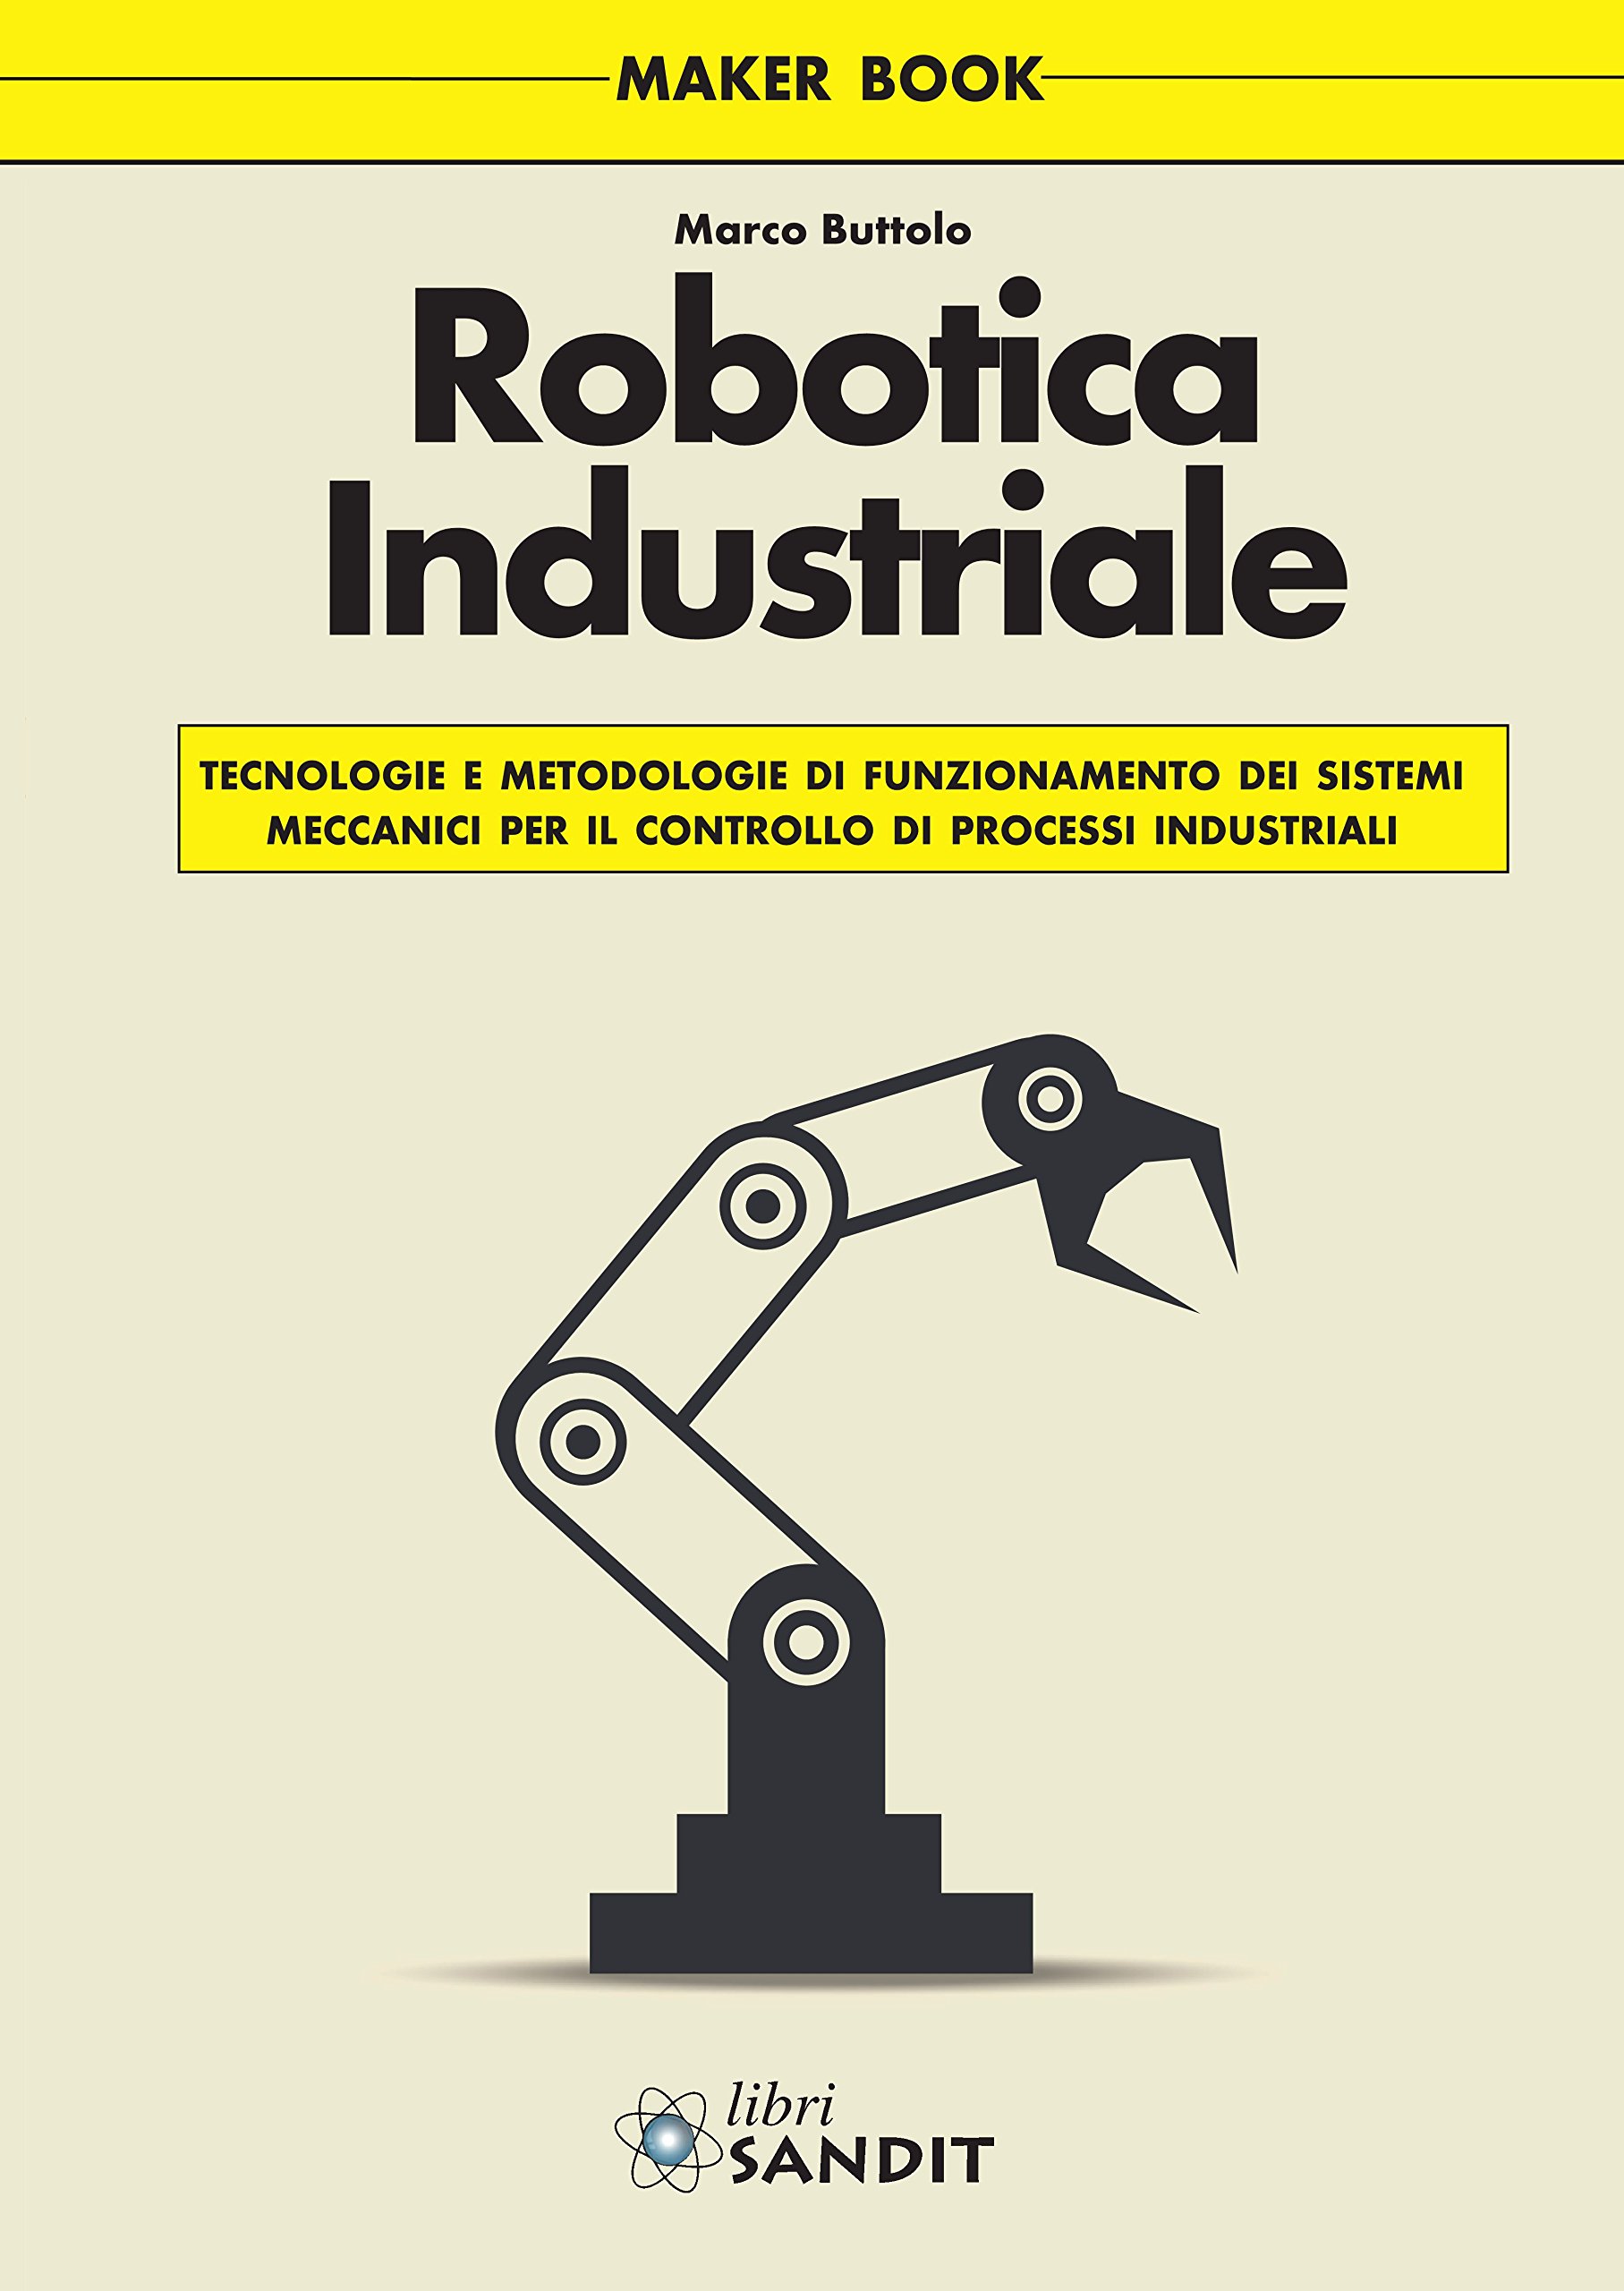 Libri Marco Buttolo - Robotica Industriale NUOVO SIGILLATO, EDIZIONE DEL 03/09/2015 SUBITO DISPONIBILE